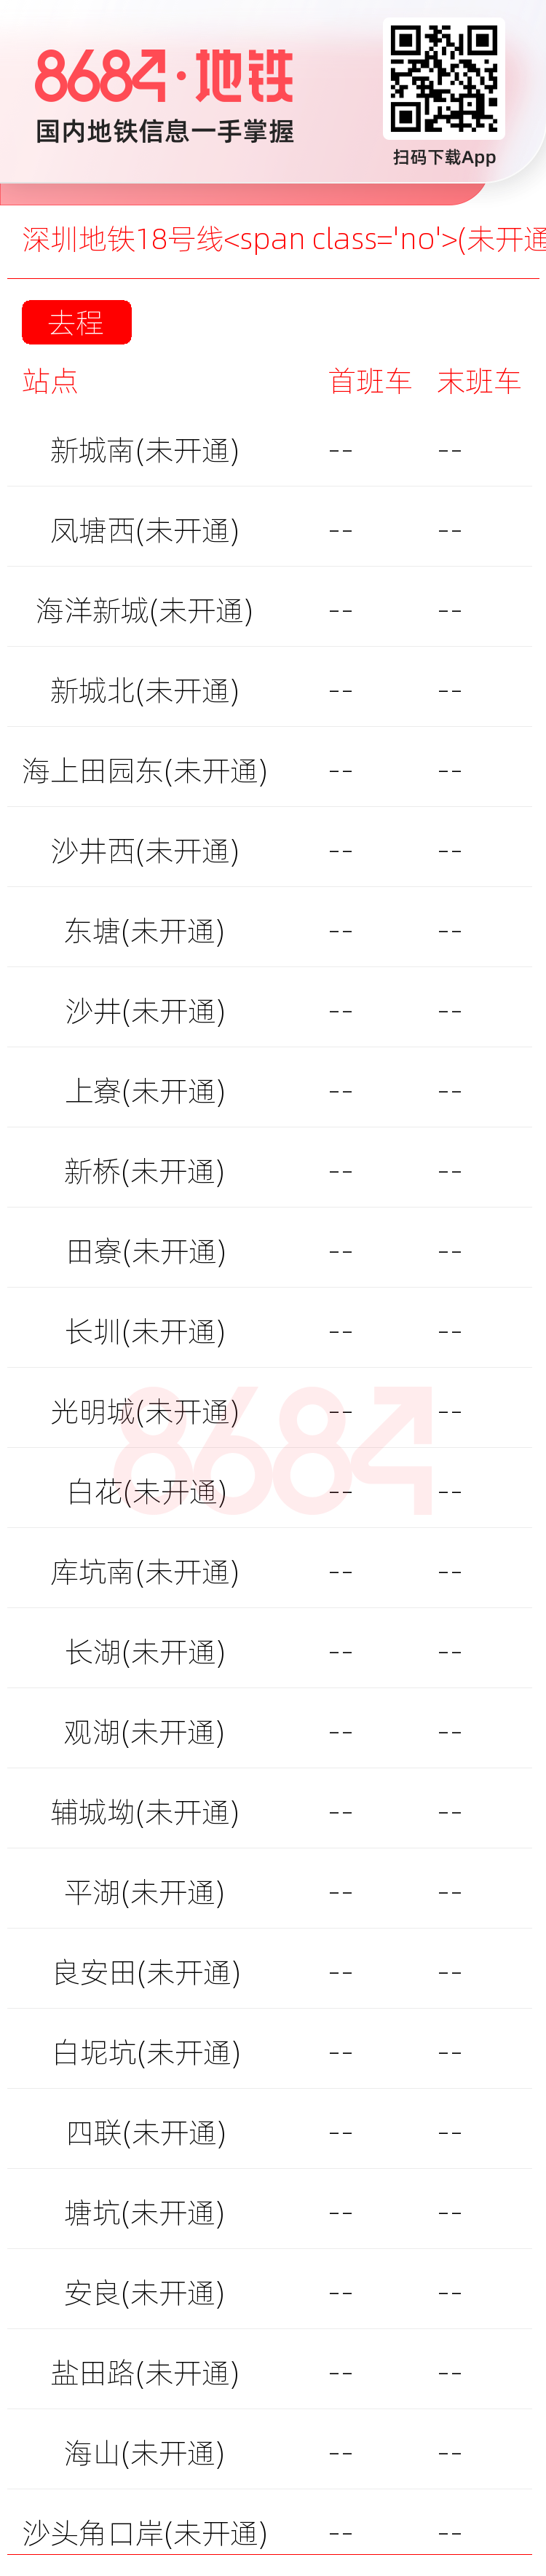 深圳地铁18号线<span class='no'>(未开通)</span>运营时间表